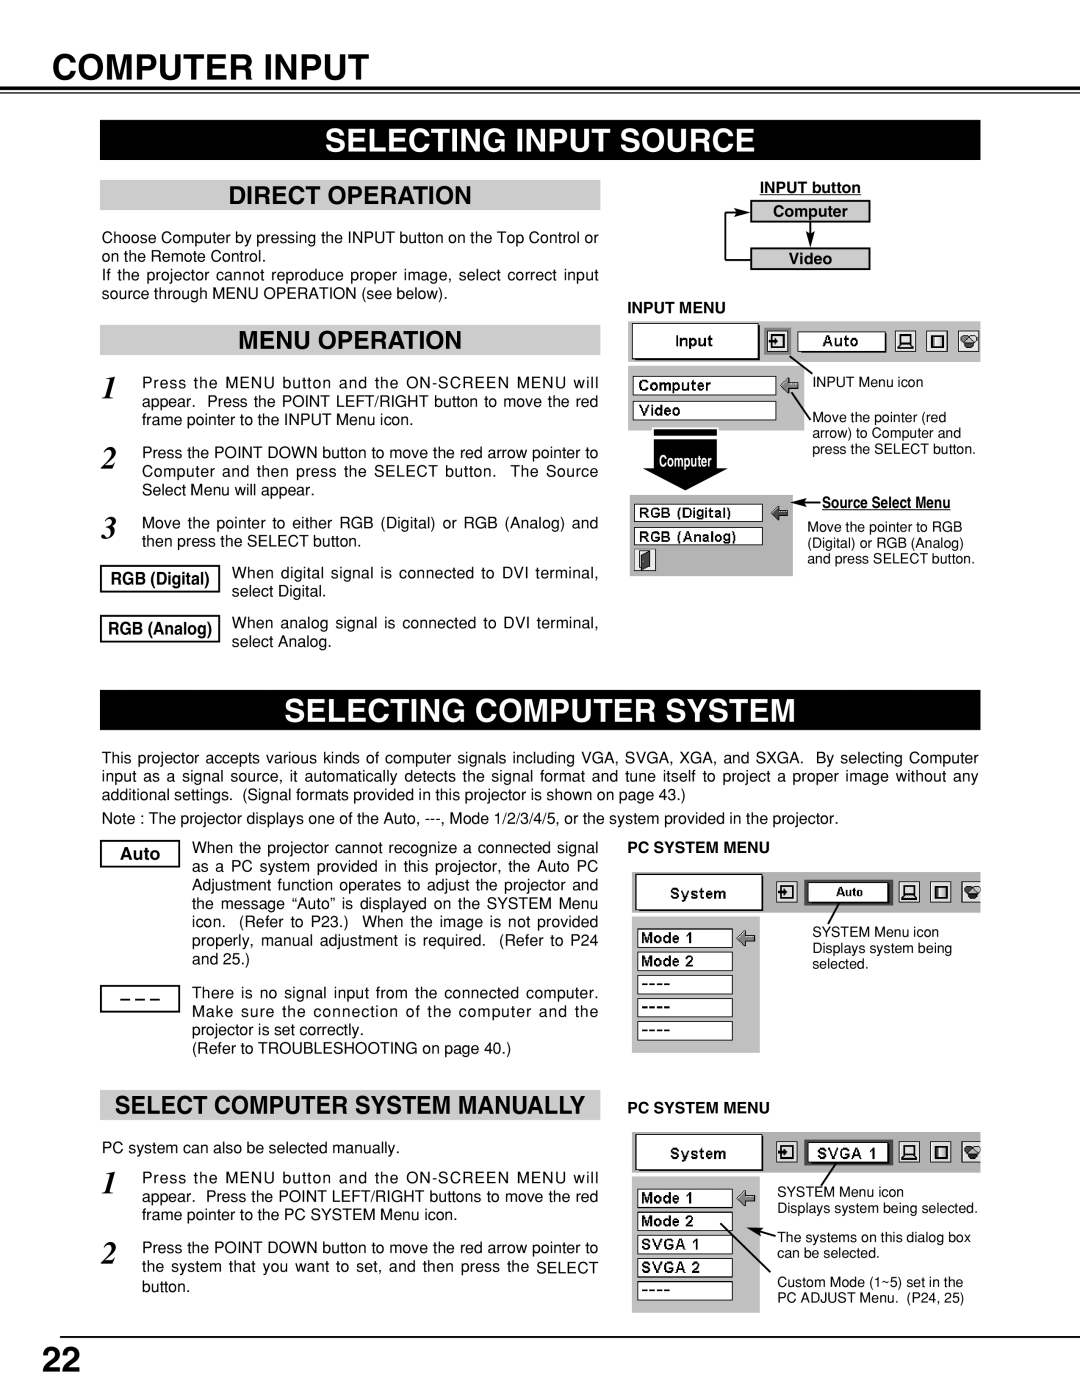 Eiki LC-XNB5M Computer Input, Selecting Input Source, Selecting Computer System, Select Computer System Manually 